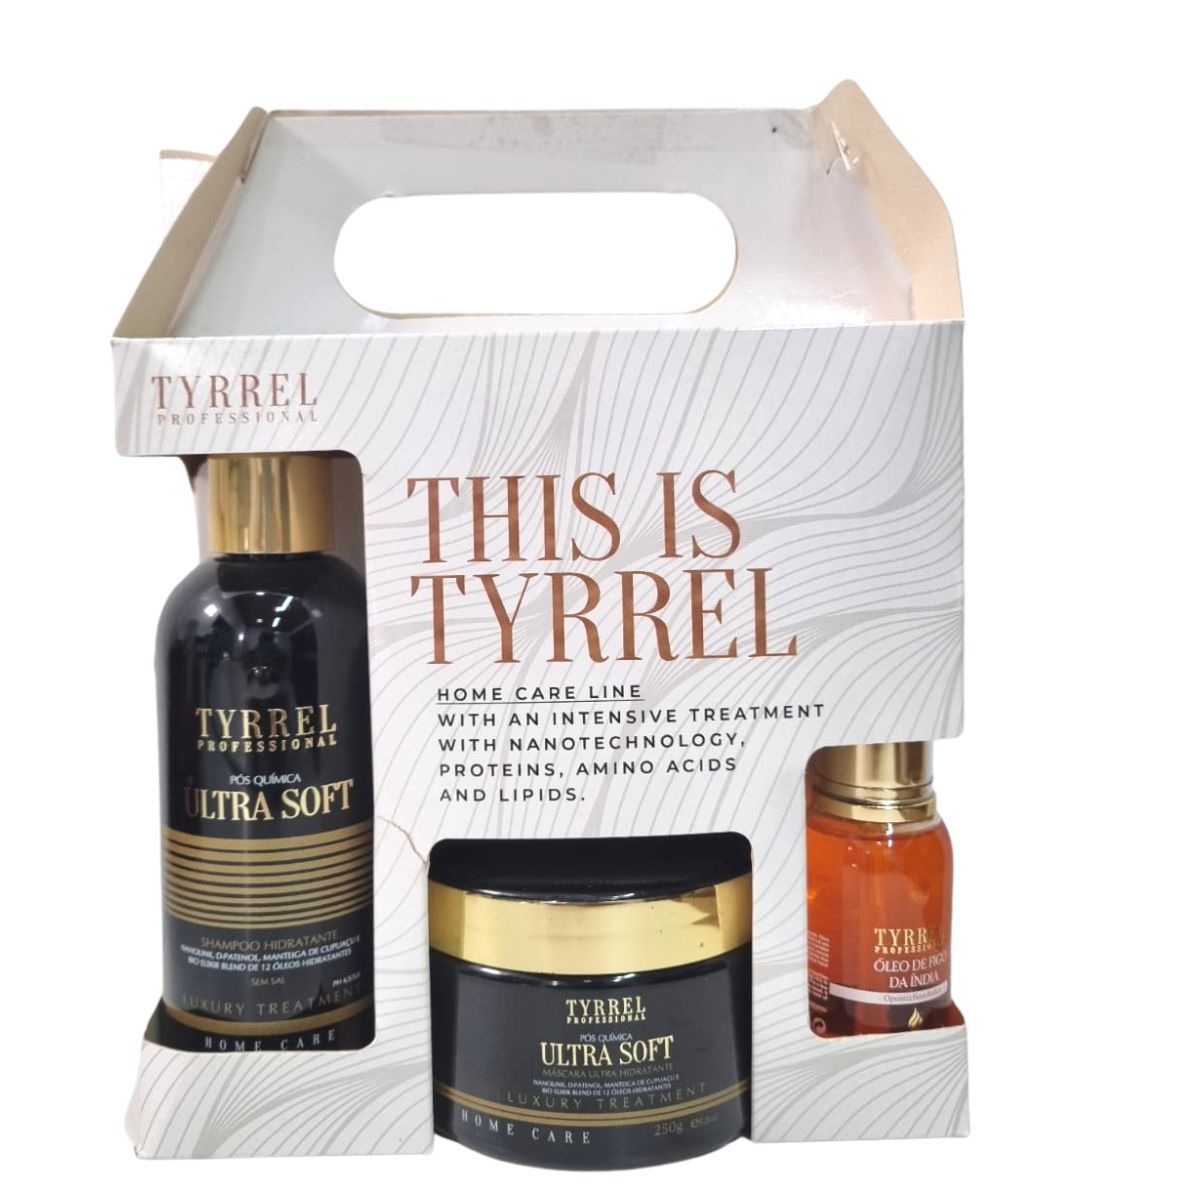 Tyrrel Home Care Manutenção Pós Ultra Soft Kit Shampoo + Mascara